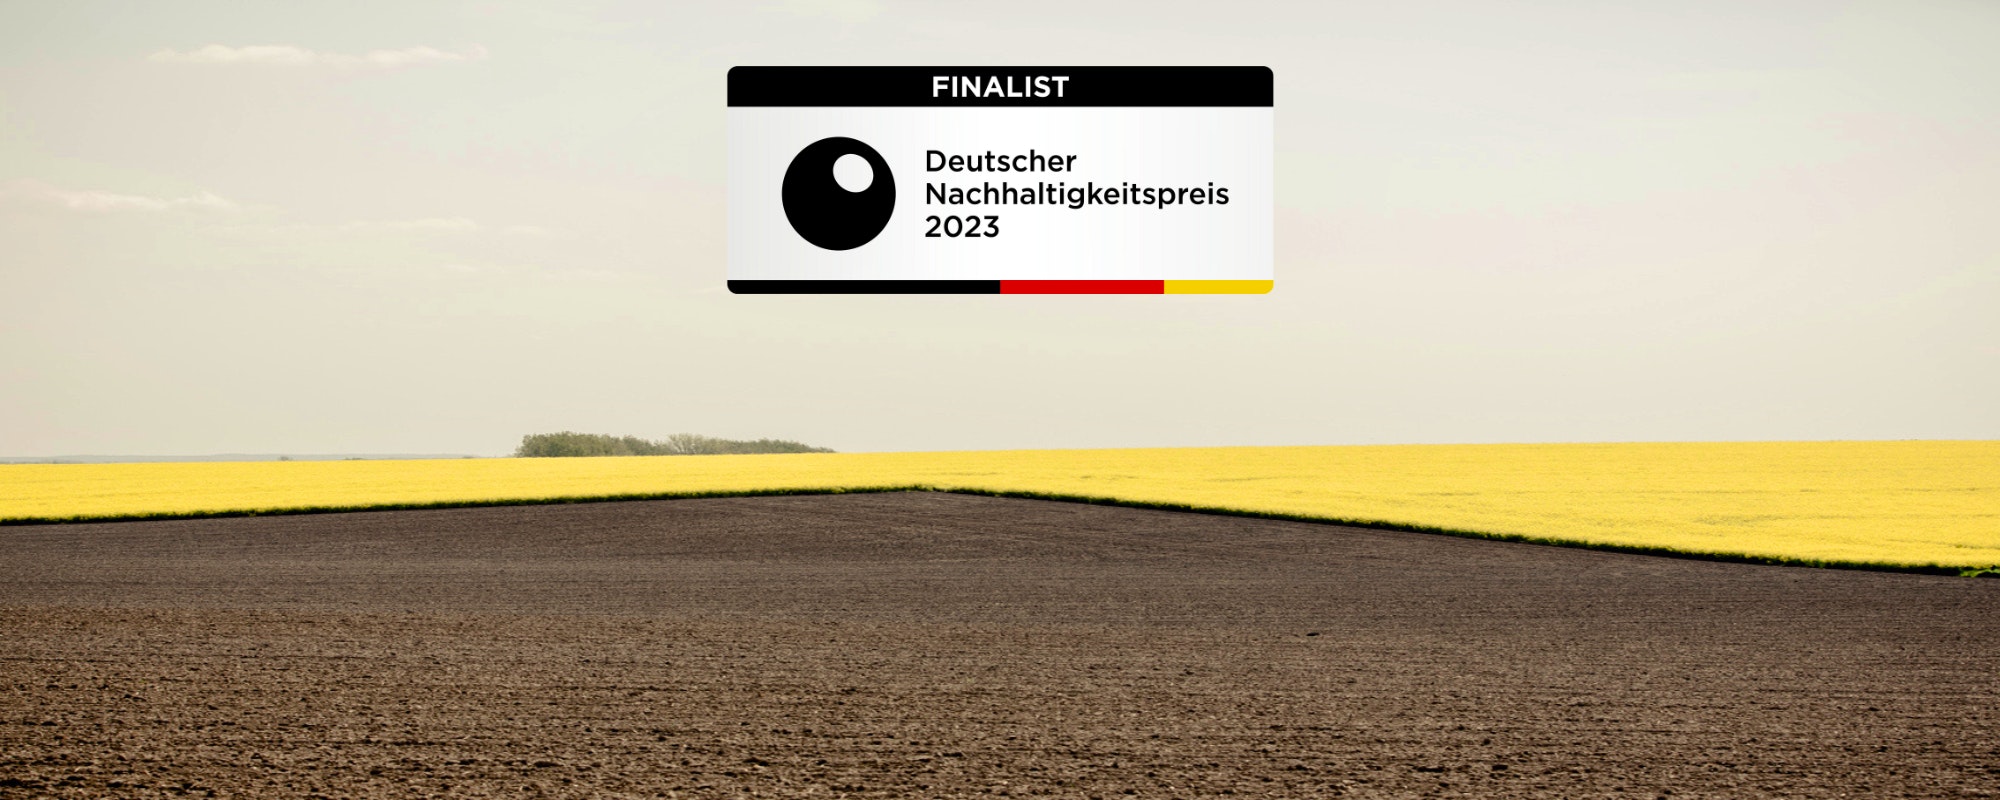 BIO PLANÈTE_Finalist_Deutscher Nachhaltigkeitspreis